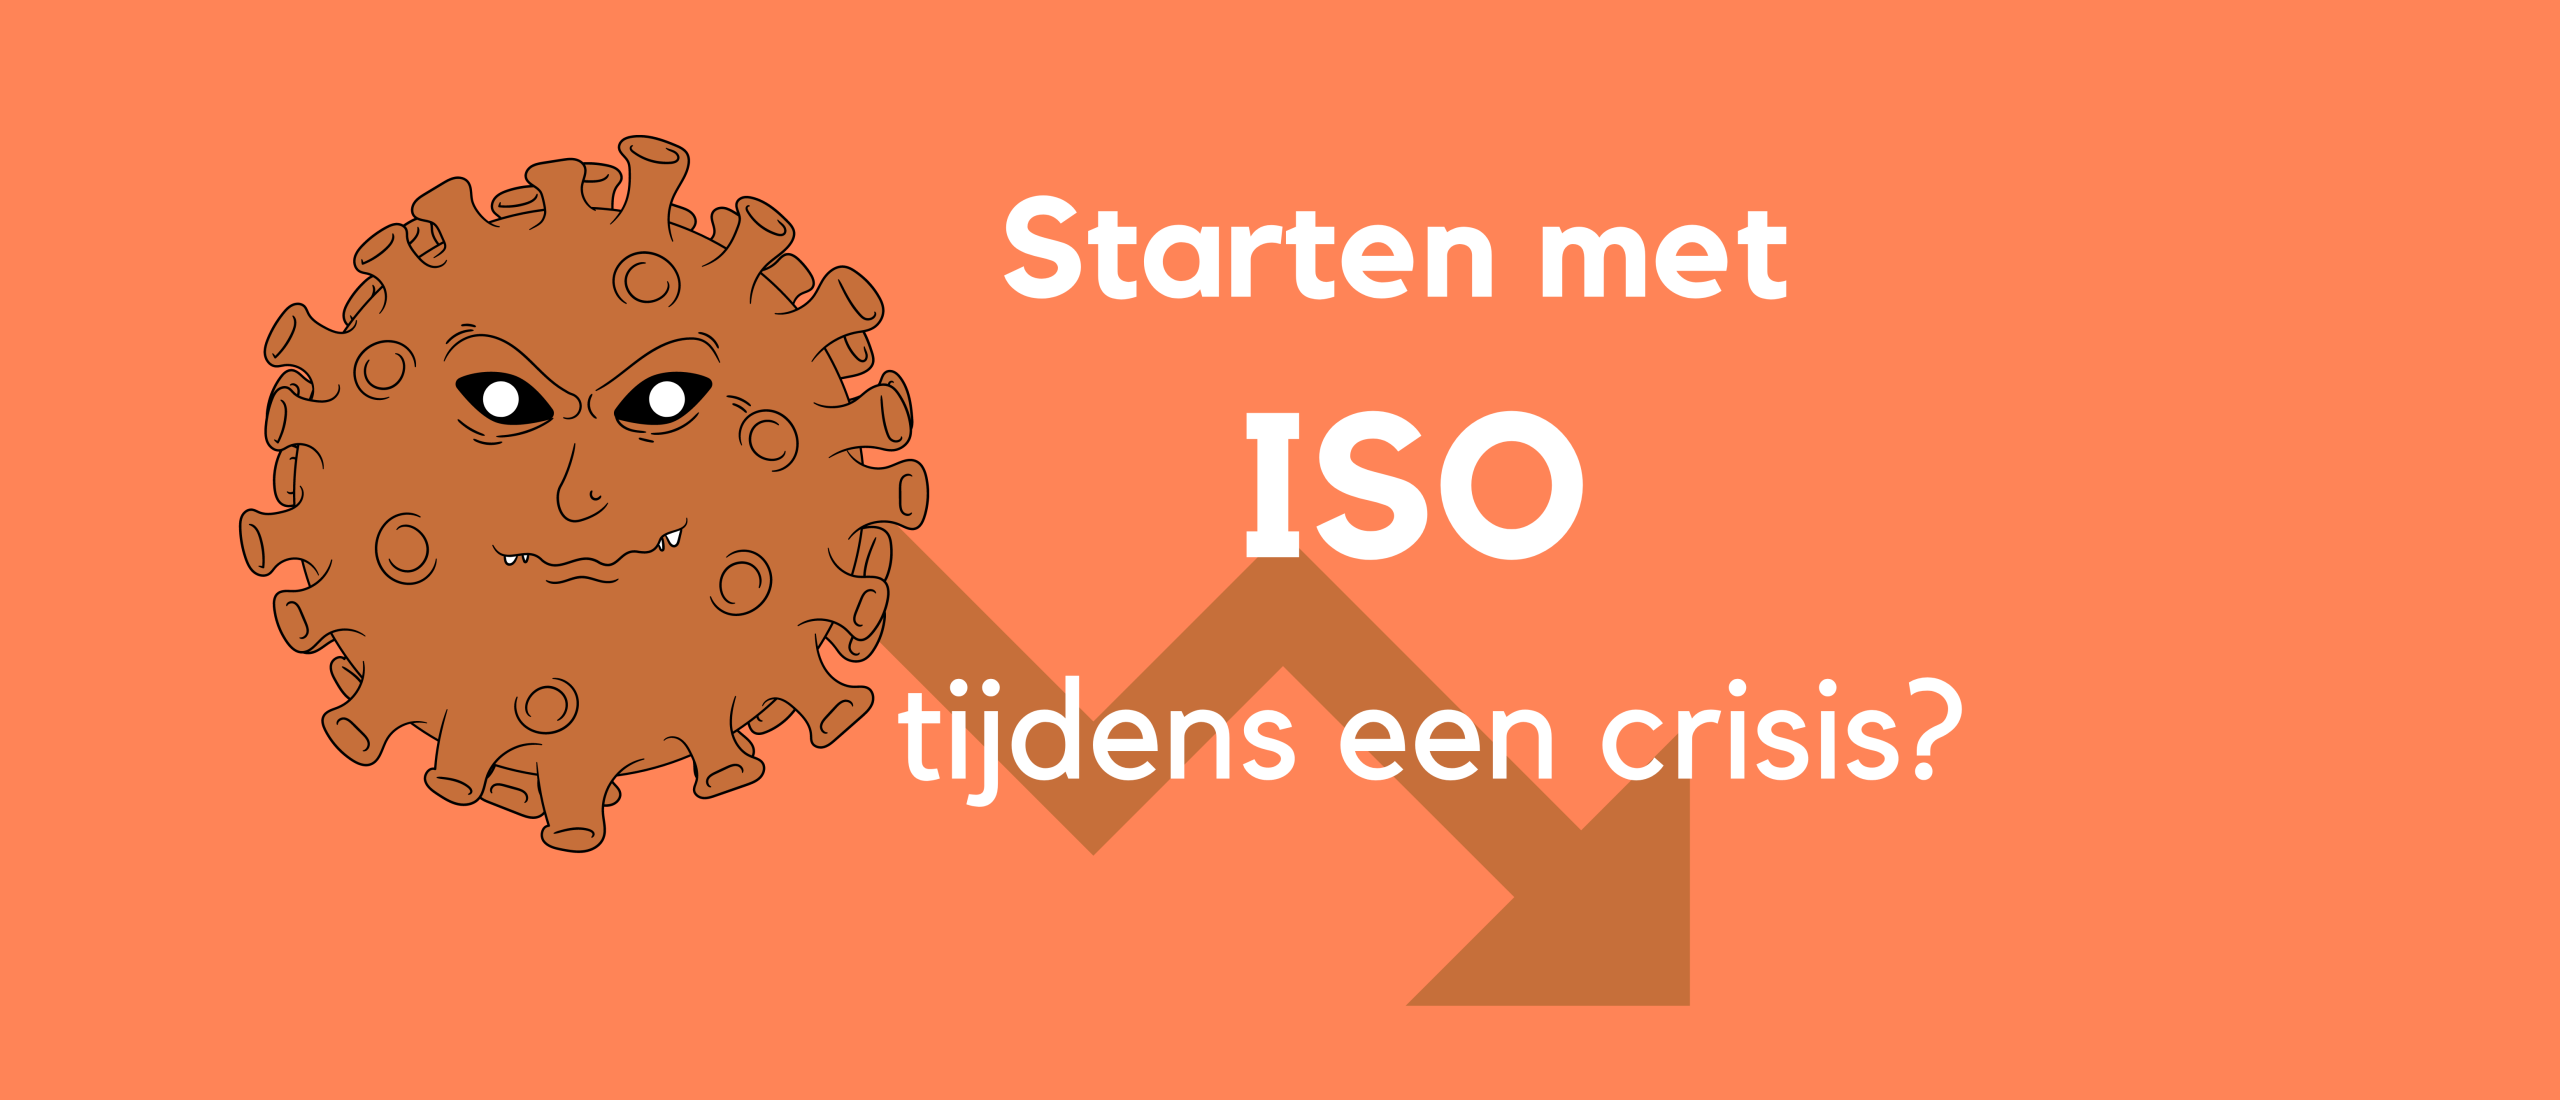 Starten met ISO tijdens een crisis